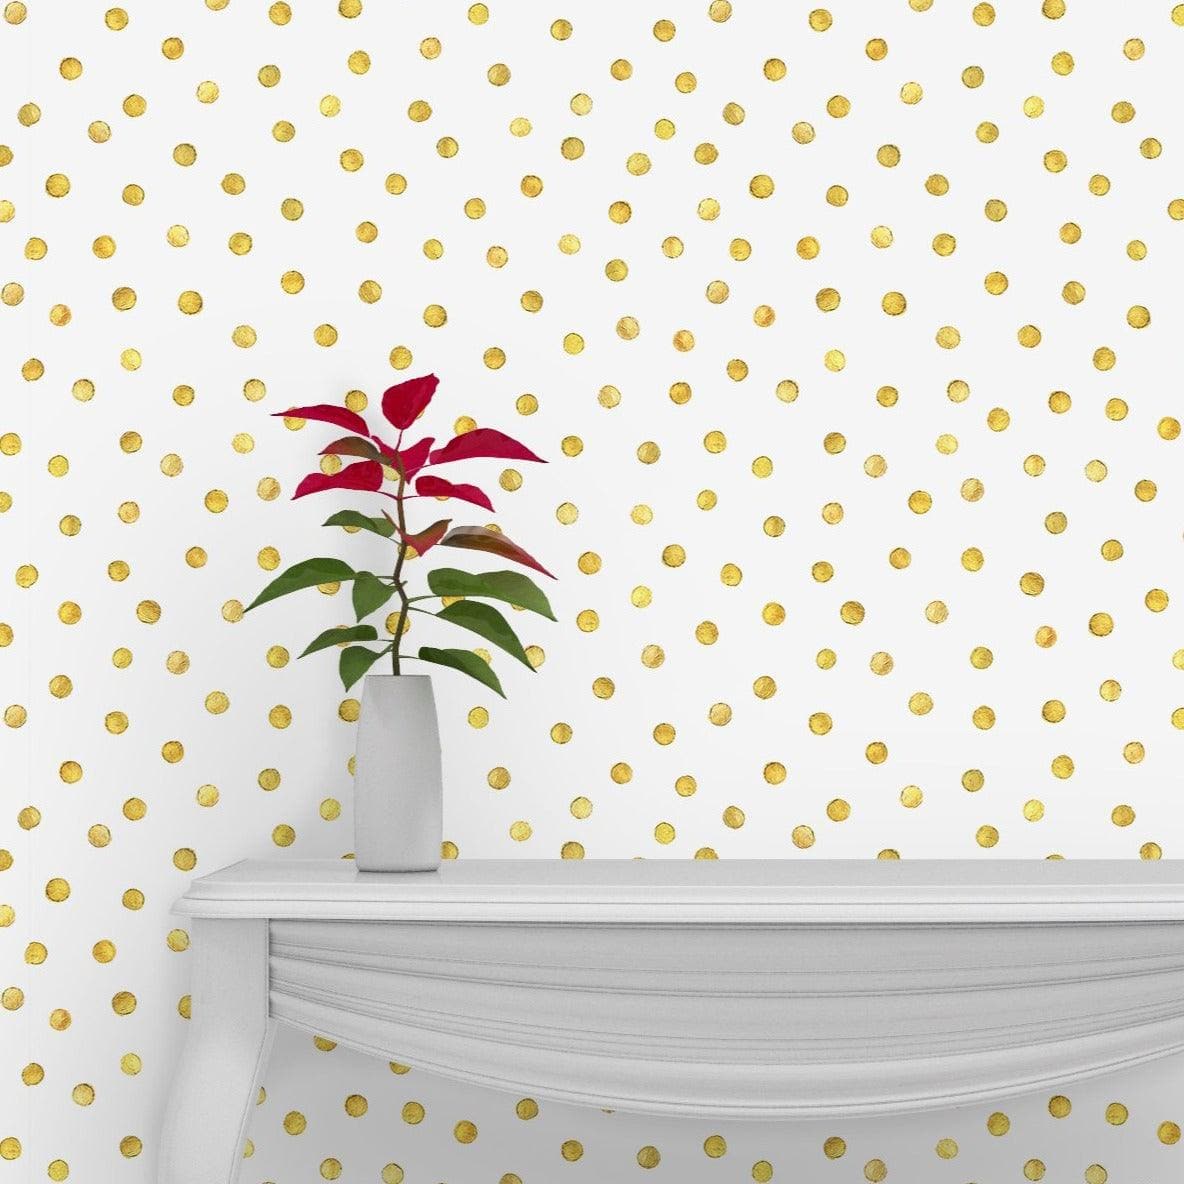 Green Waves Boho Style Self Adhesive Wallpaper Gold Polka Dots Removable Wallpaper 